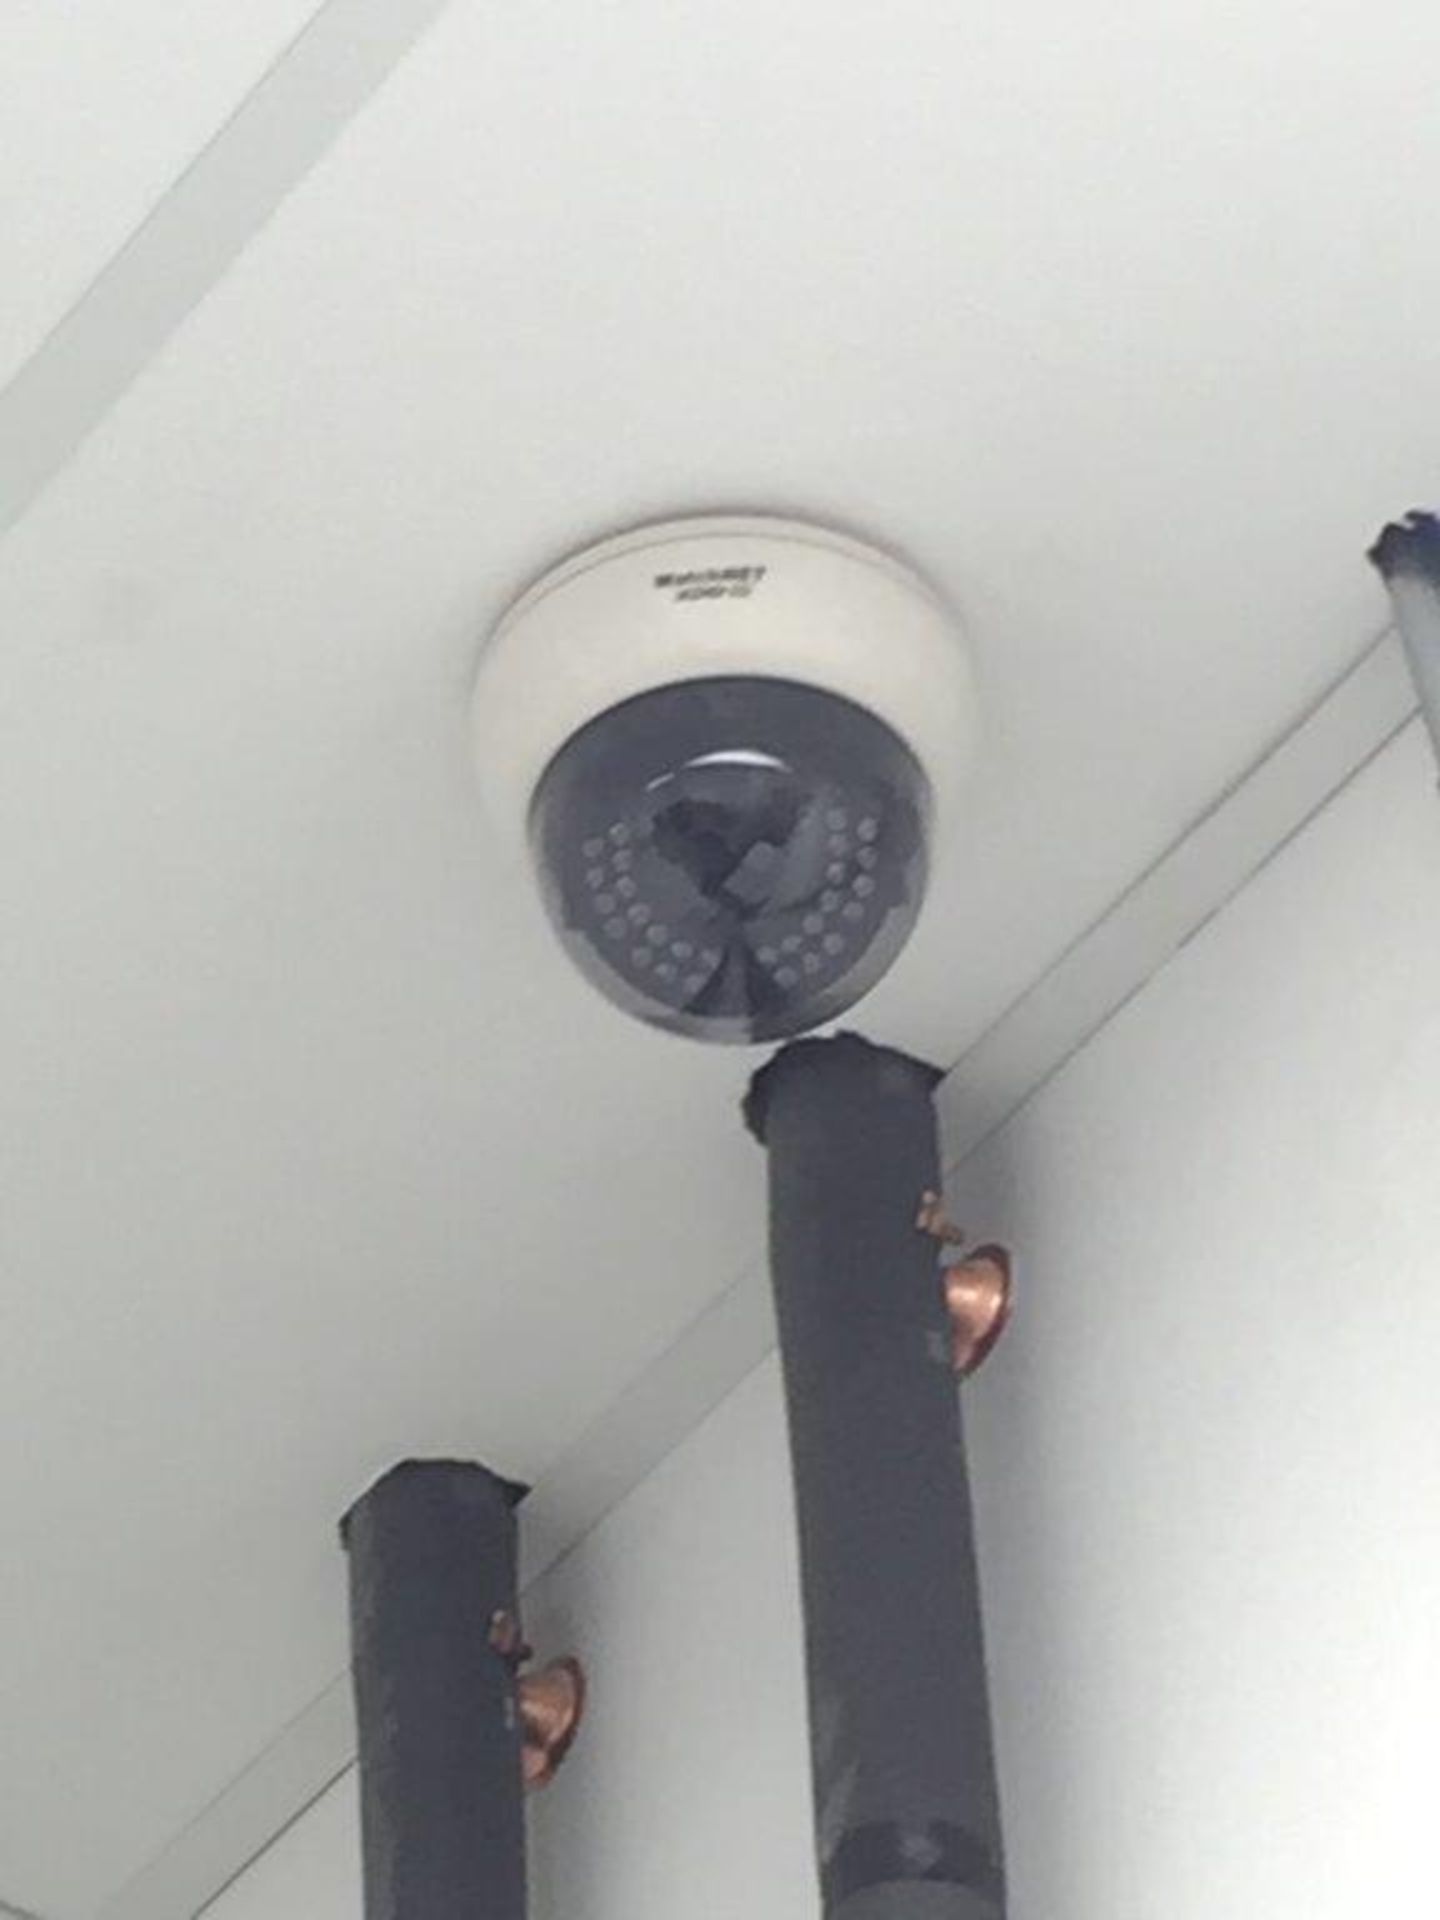 Système surveillance WATCHNET, (4) caméras & boite controle - Image 3 of 3